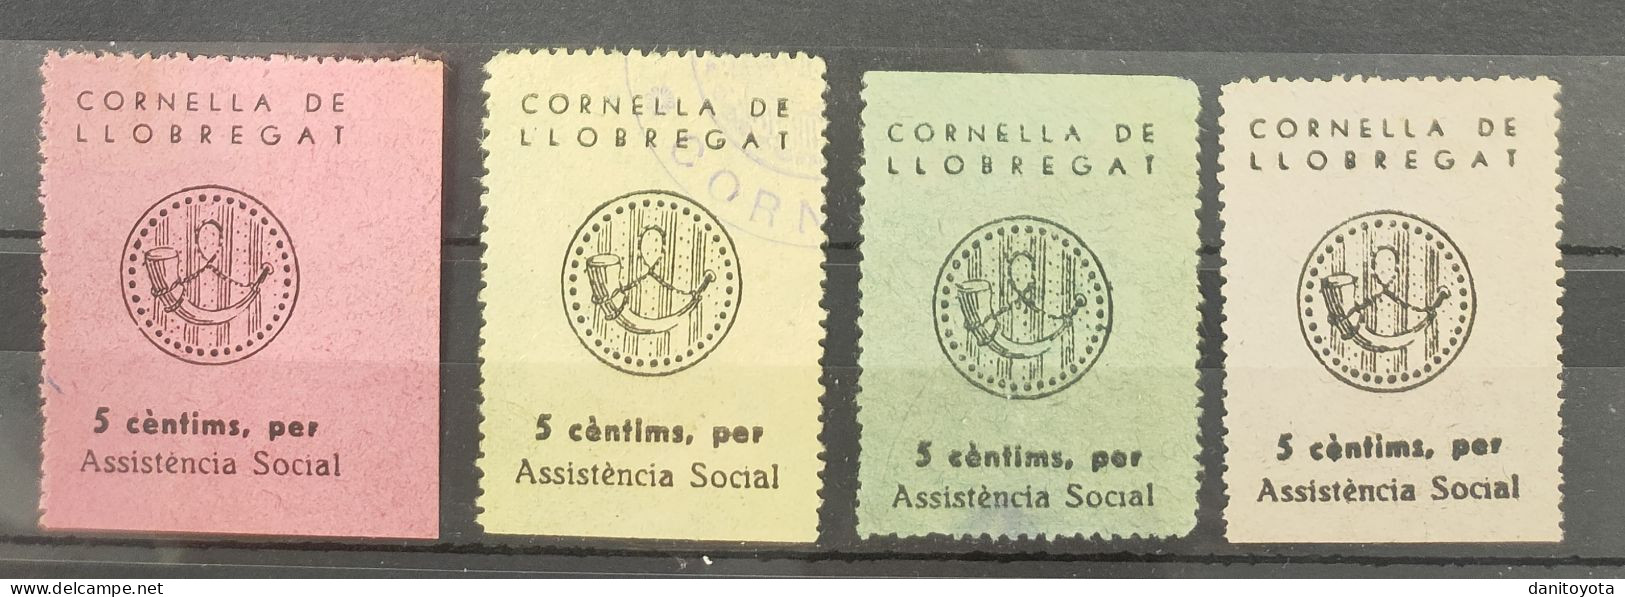 CORNELLA DE LLOBREGAT ( BARCELONA). 5 CTS ASSISTENCIA SOCIAL. LOTE DE 4 SELLOS. - Republican Issues